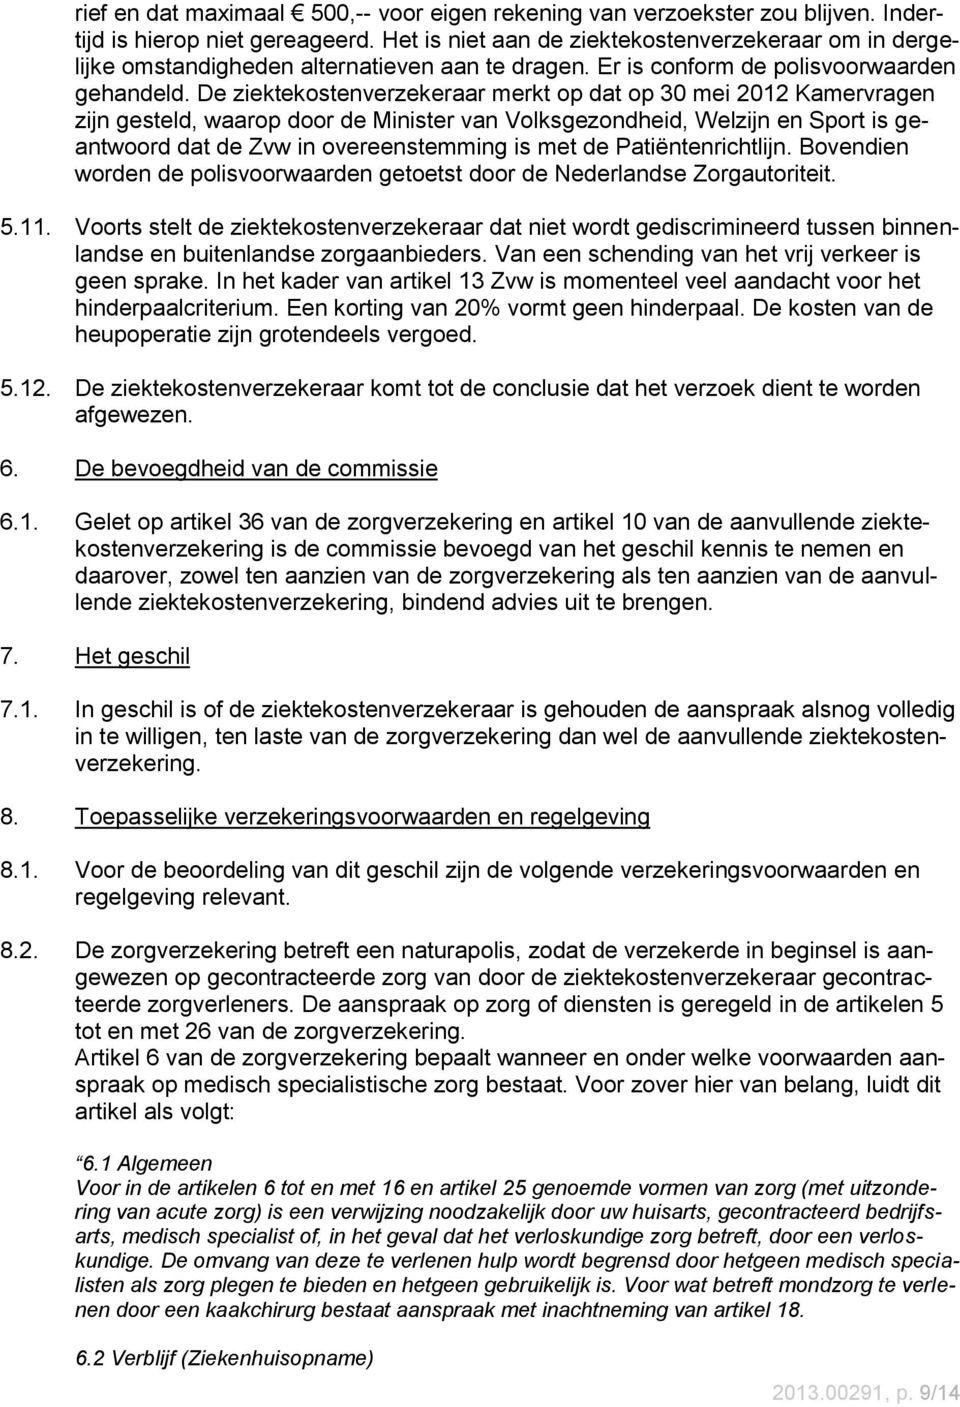 De ziektekostenverzekeraar merkt op dat op 30 mei 2012 Kamervragen zijn gesteld, waarop door de Minister van Volksgezondheid, Welzijn en Sport is geantwoord dat de Zvw in overeenstemming is met de